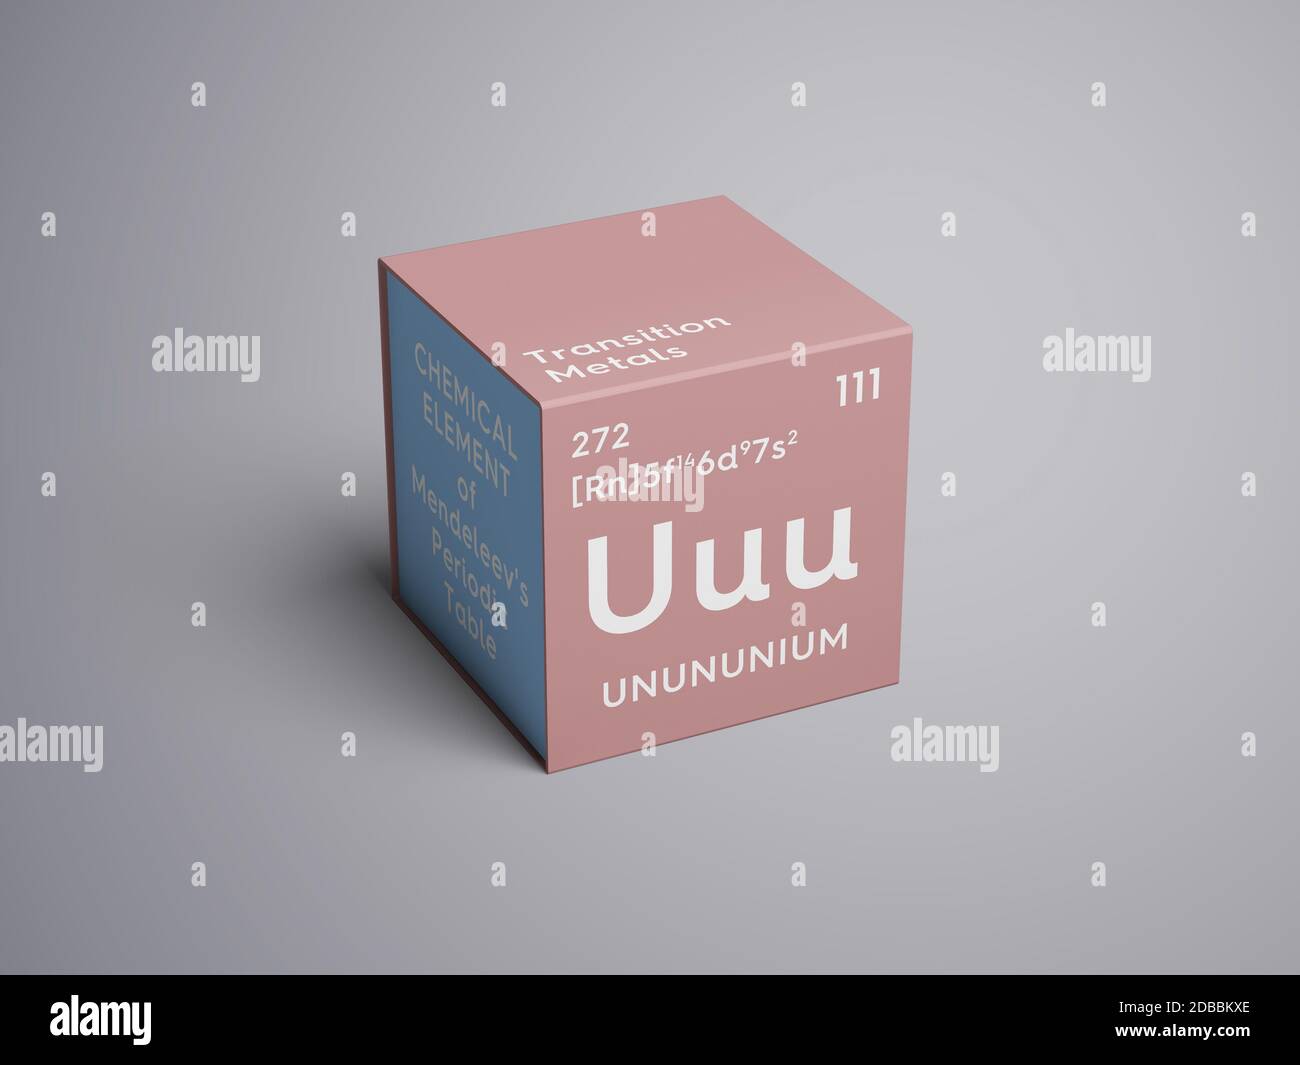 Unununium. Transition metals. Chemical Element of Mendeleev's Periodic Table. Unununium in square cube creative concept. 3D illustration. Stock Photo